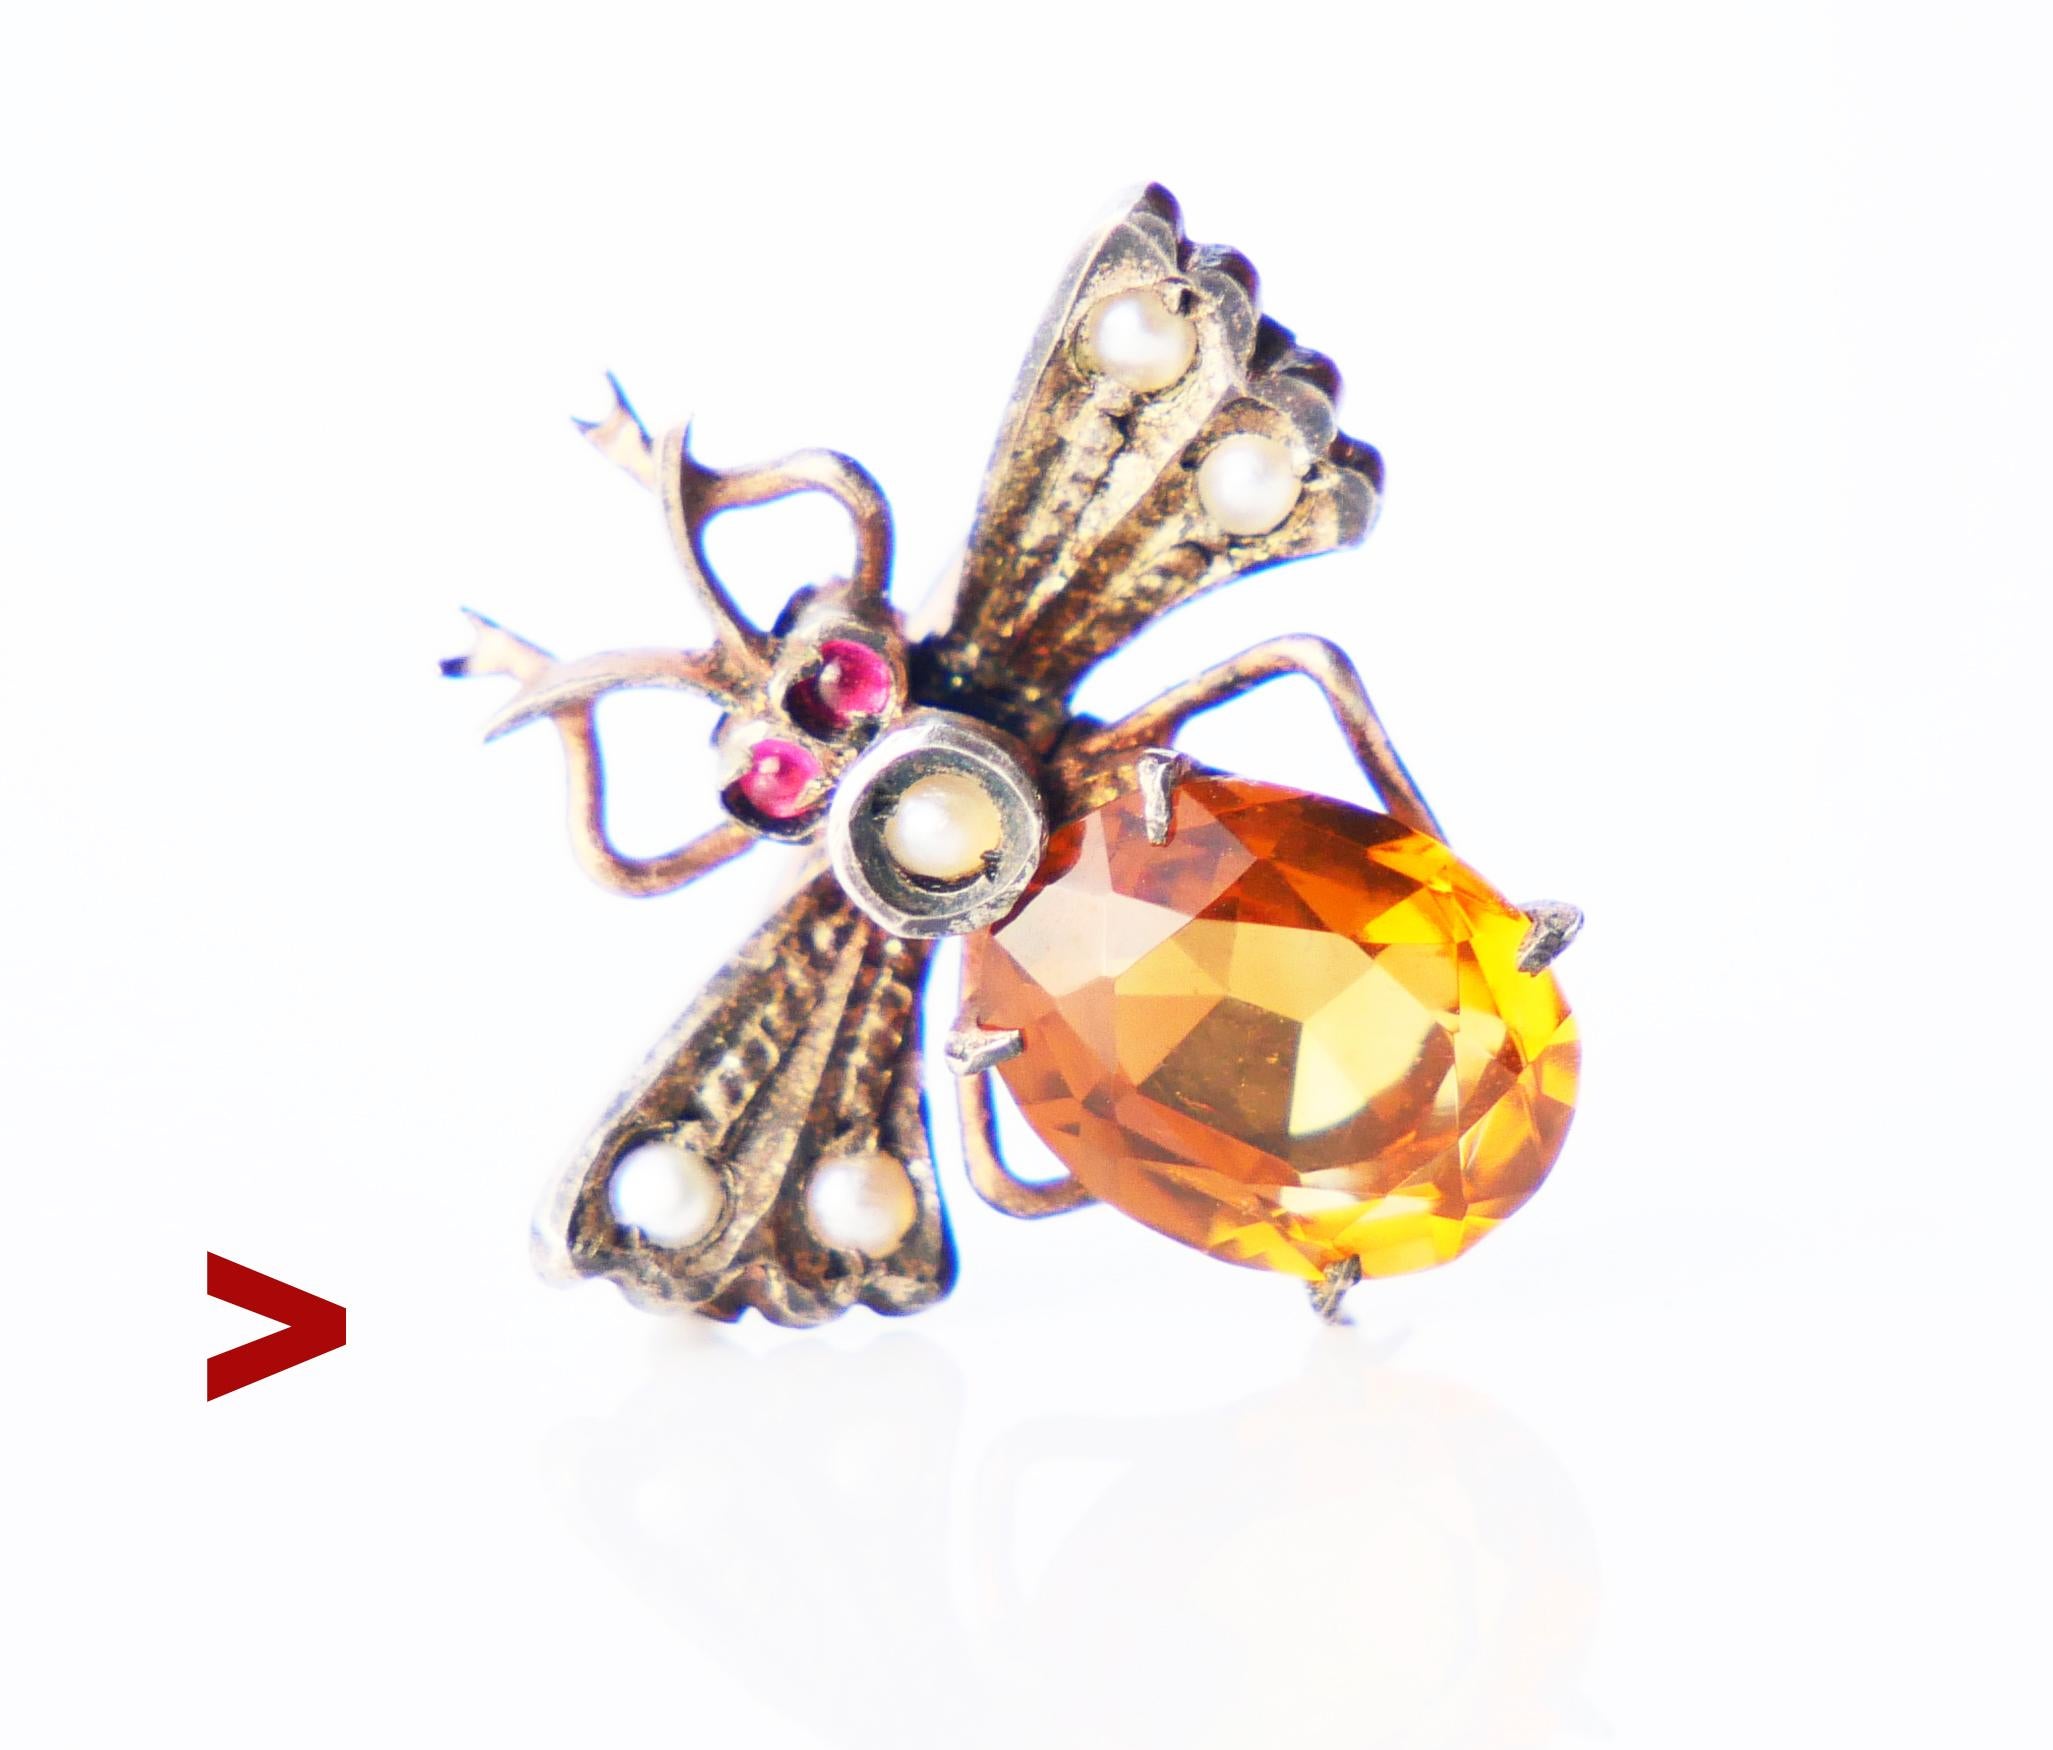 Antique vers le début du XXe siècle. Broche en forme de scarabée modelée comme un insecte qui ressemble à un scarabée, habilement assemblé à partir de nombreuses pièces séparées. En argent doré, orné de citrine naturelle jaune orangé, de deux